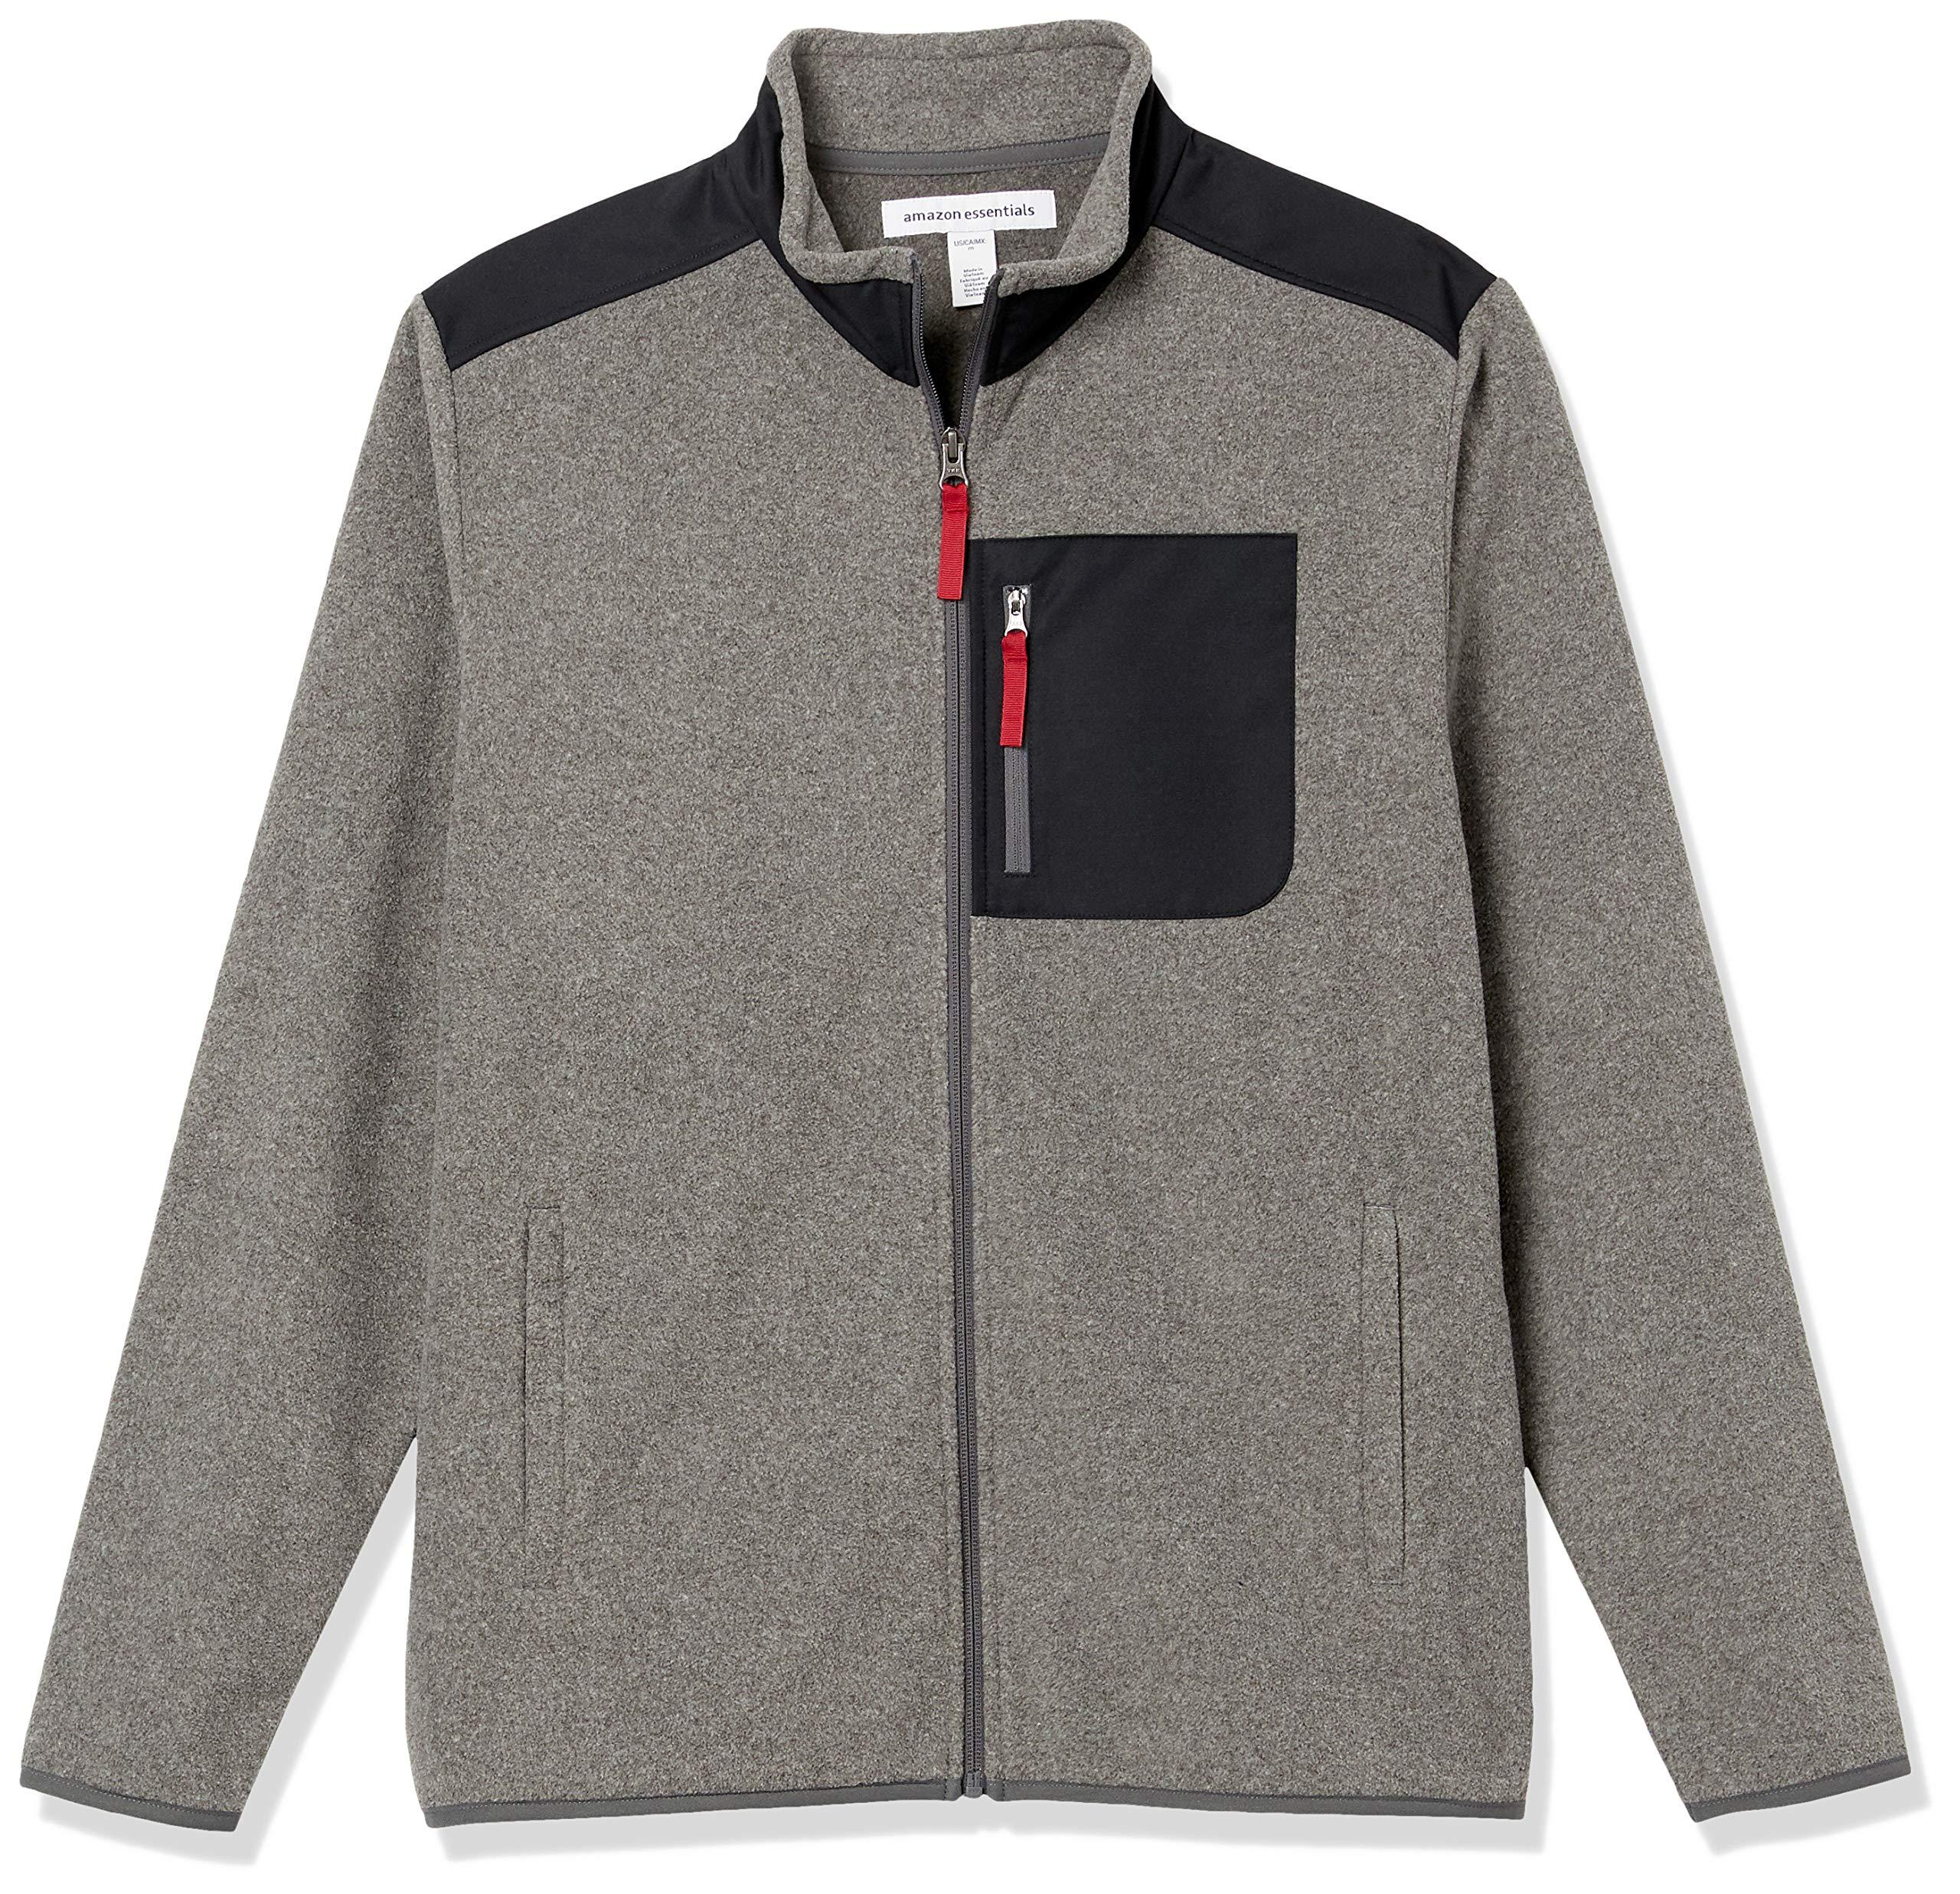 Amazon Essentials Full-zip Polar Fleece Jacket in Gray for Men - Lyst